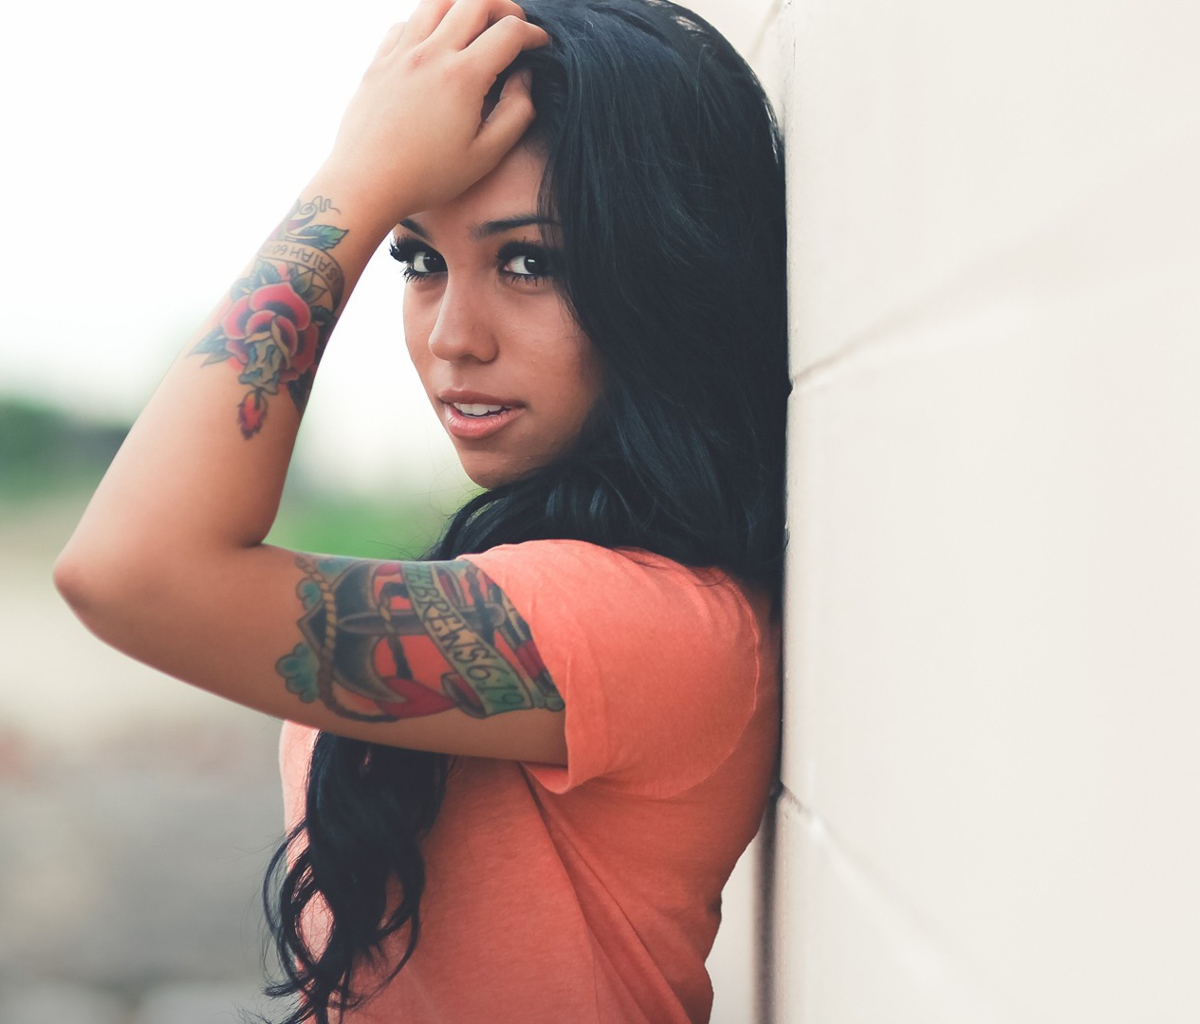 Beautiful Latin American Model With Tattoos screenshot #1 1200x1024